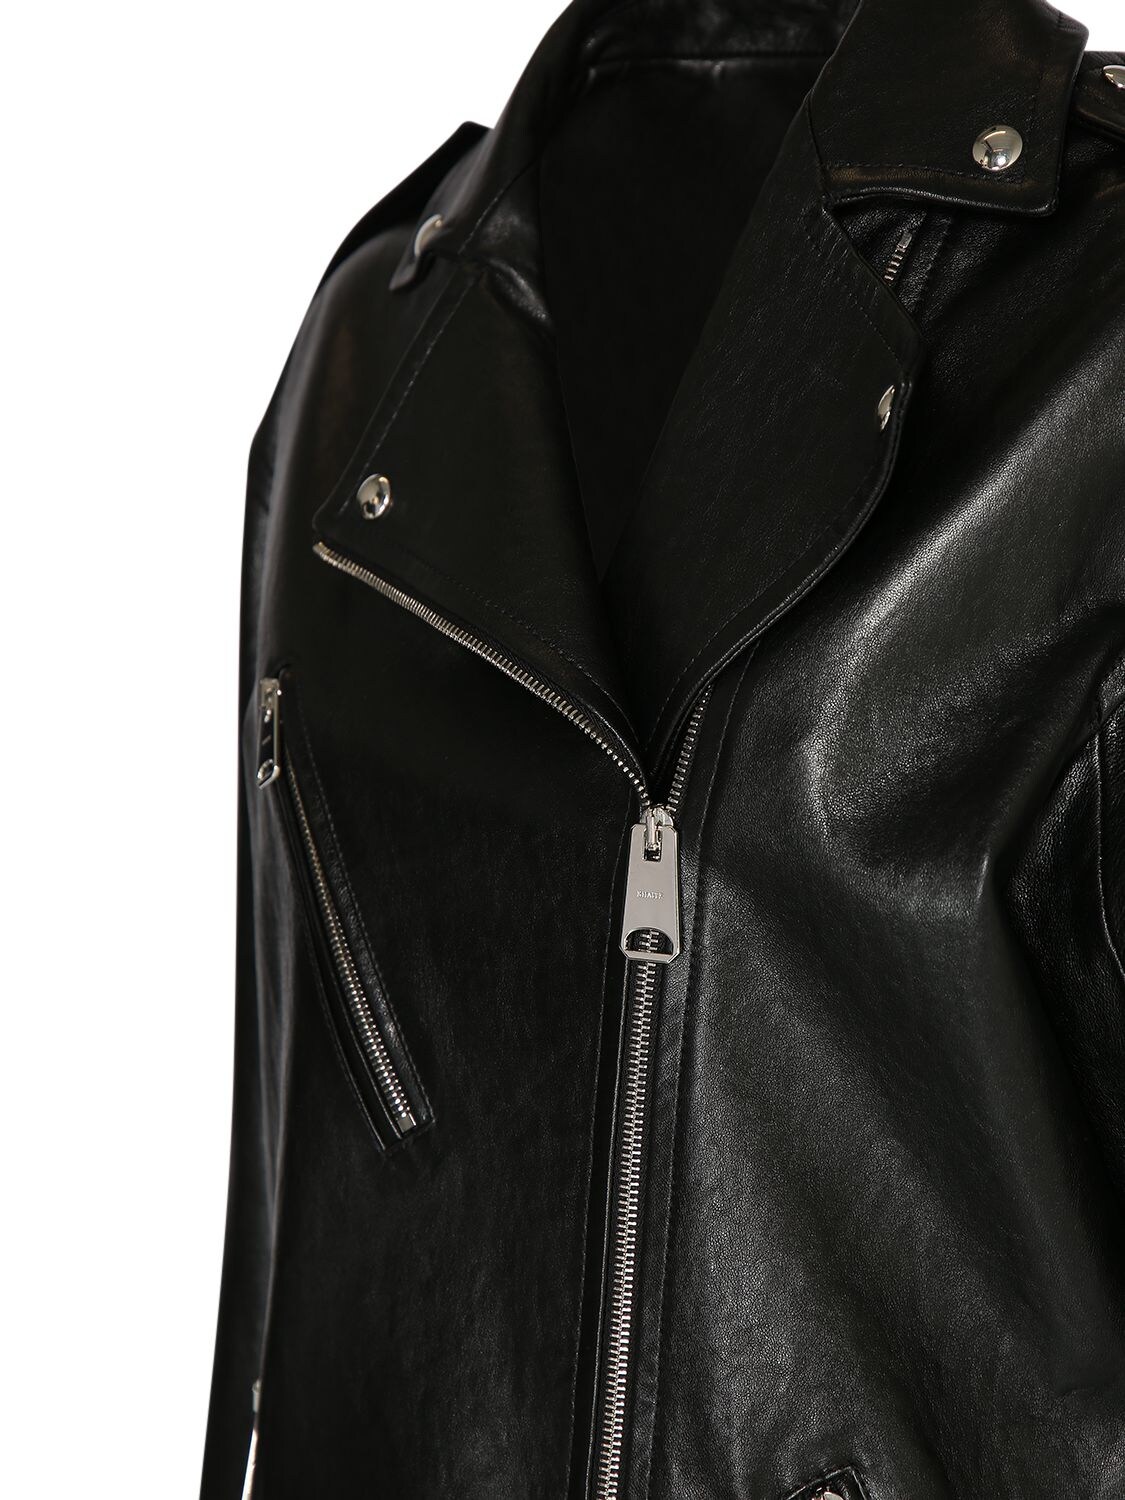 Shop Khaite Hanson Lamb Leather Jacket In Black